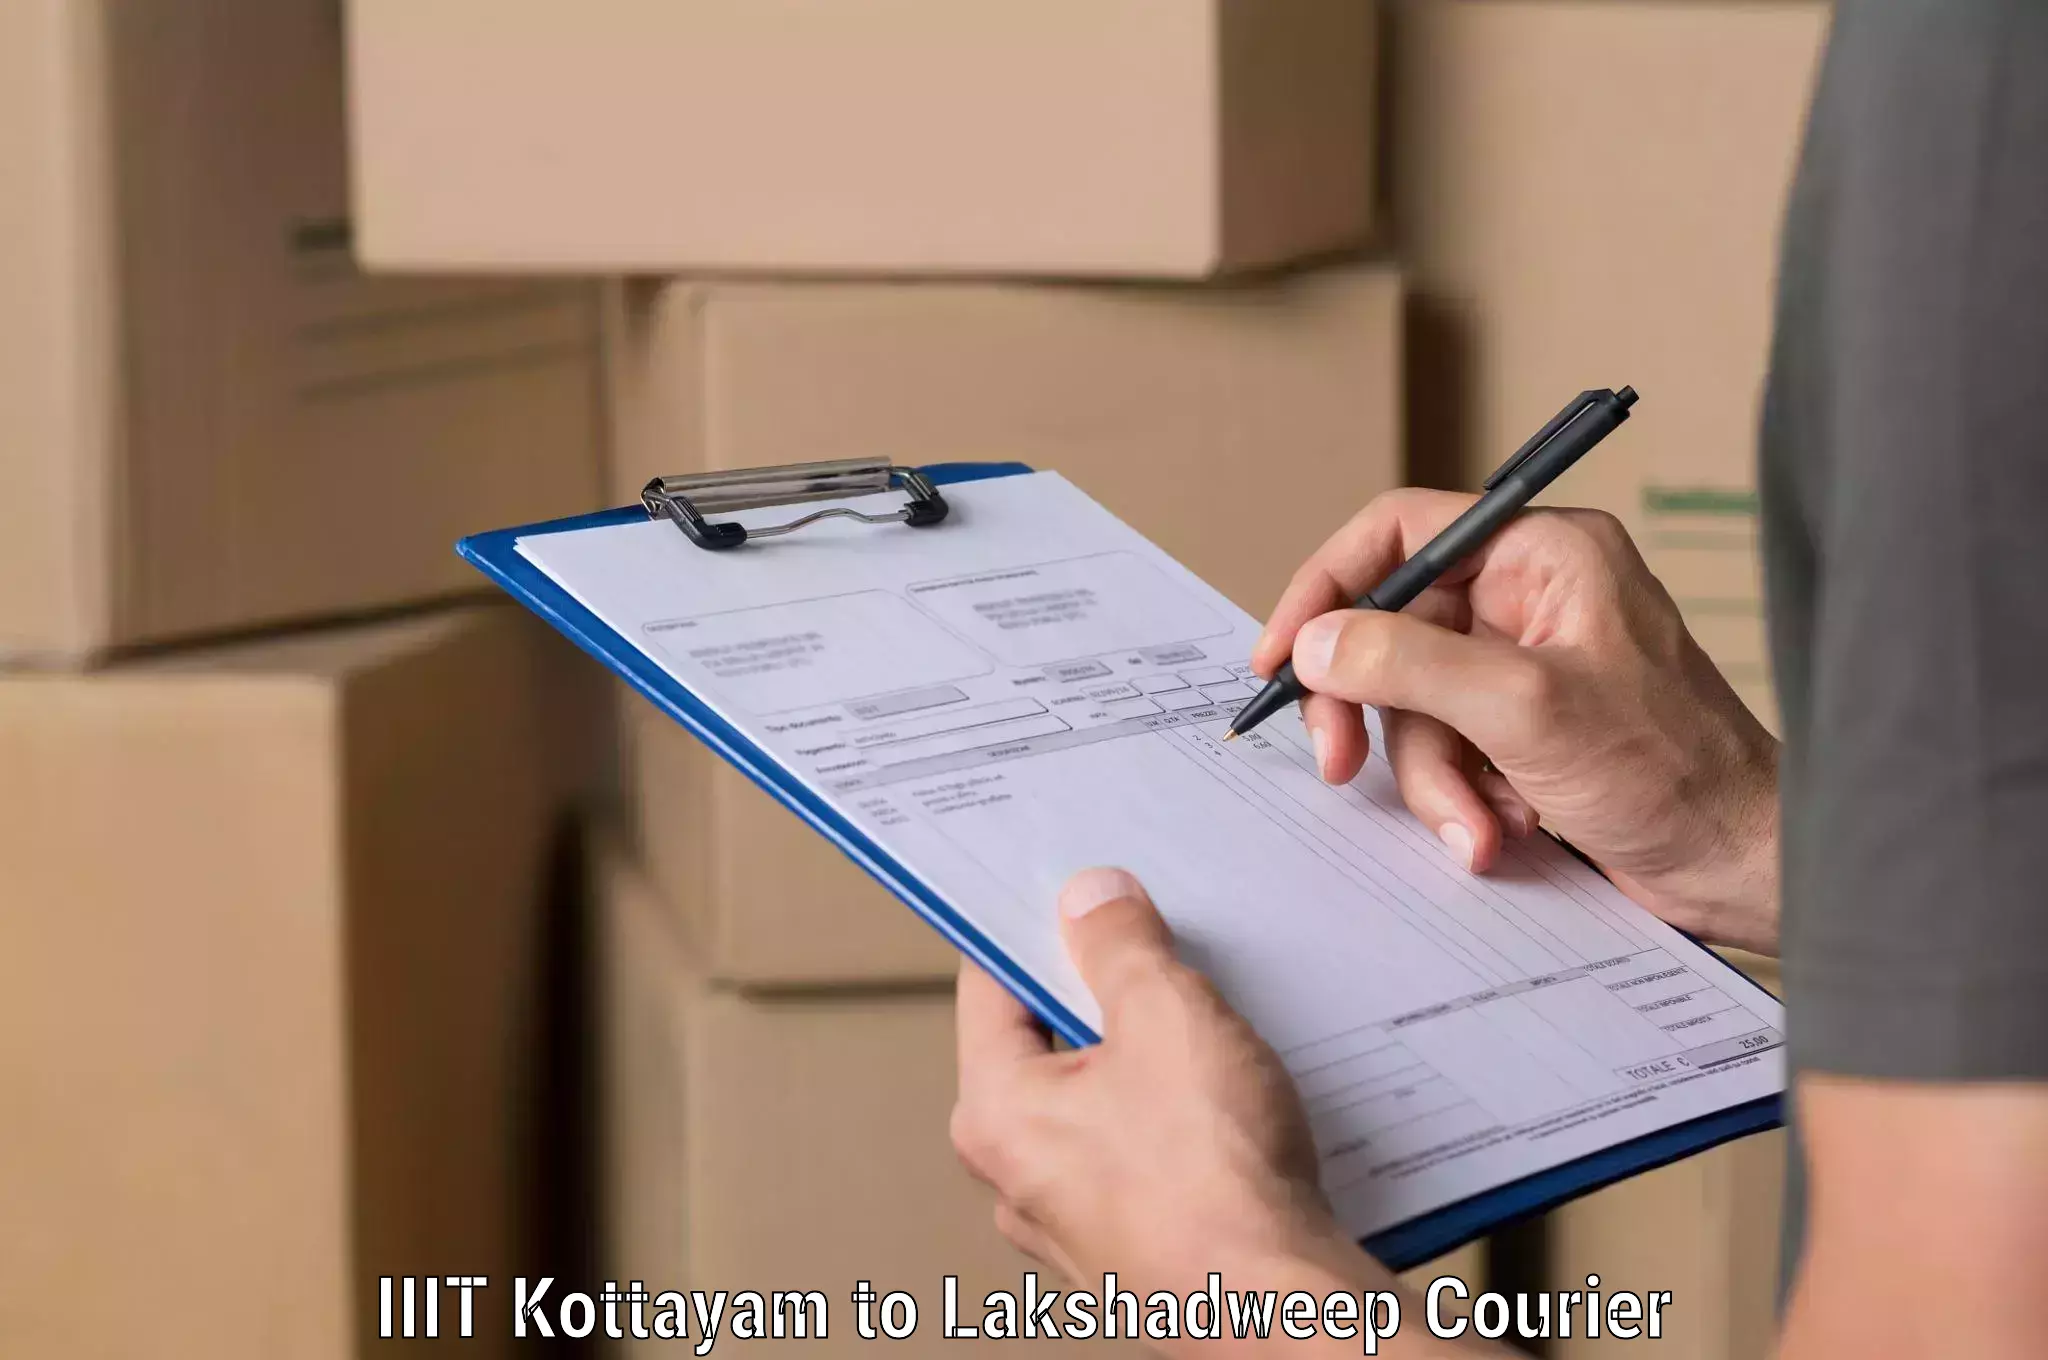 Digital courier platforms IIIT Kottayam to Lakshadweep